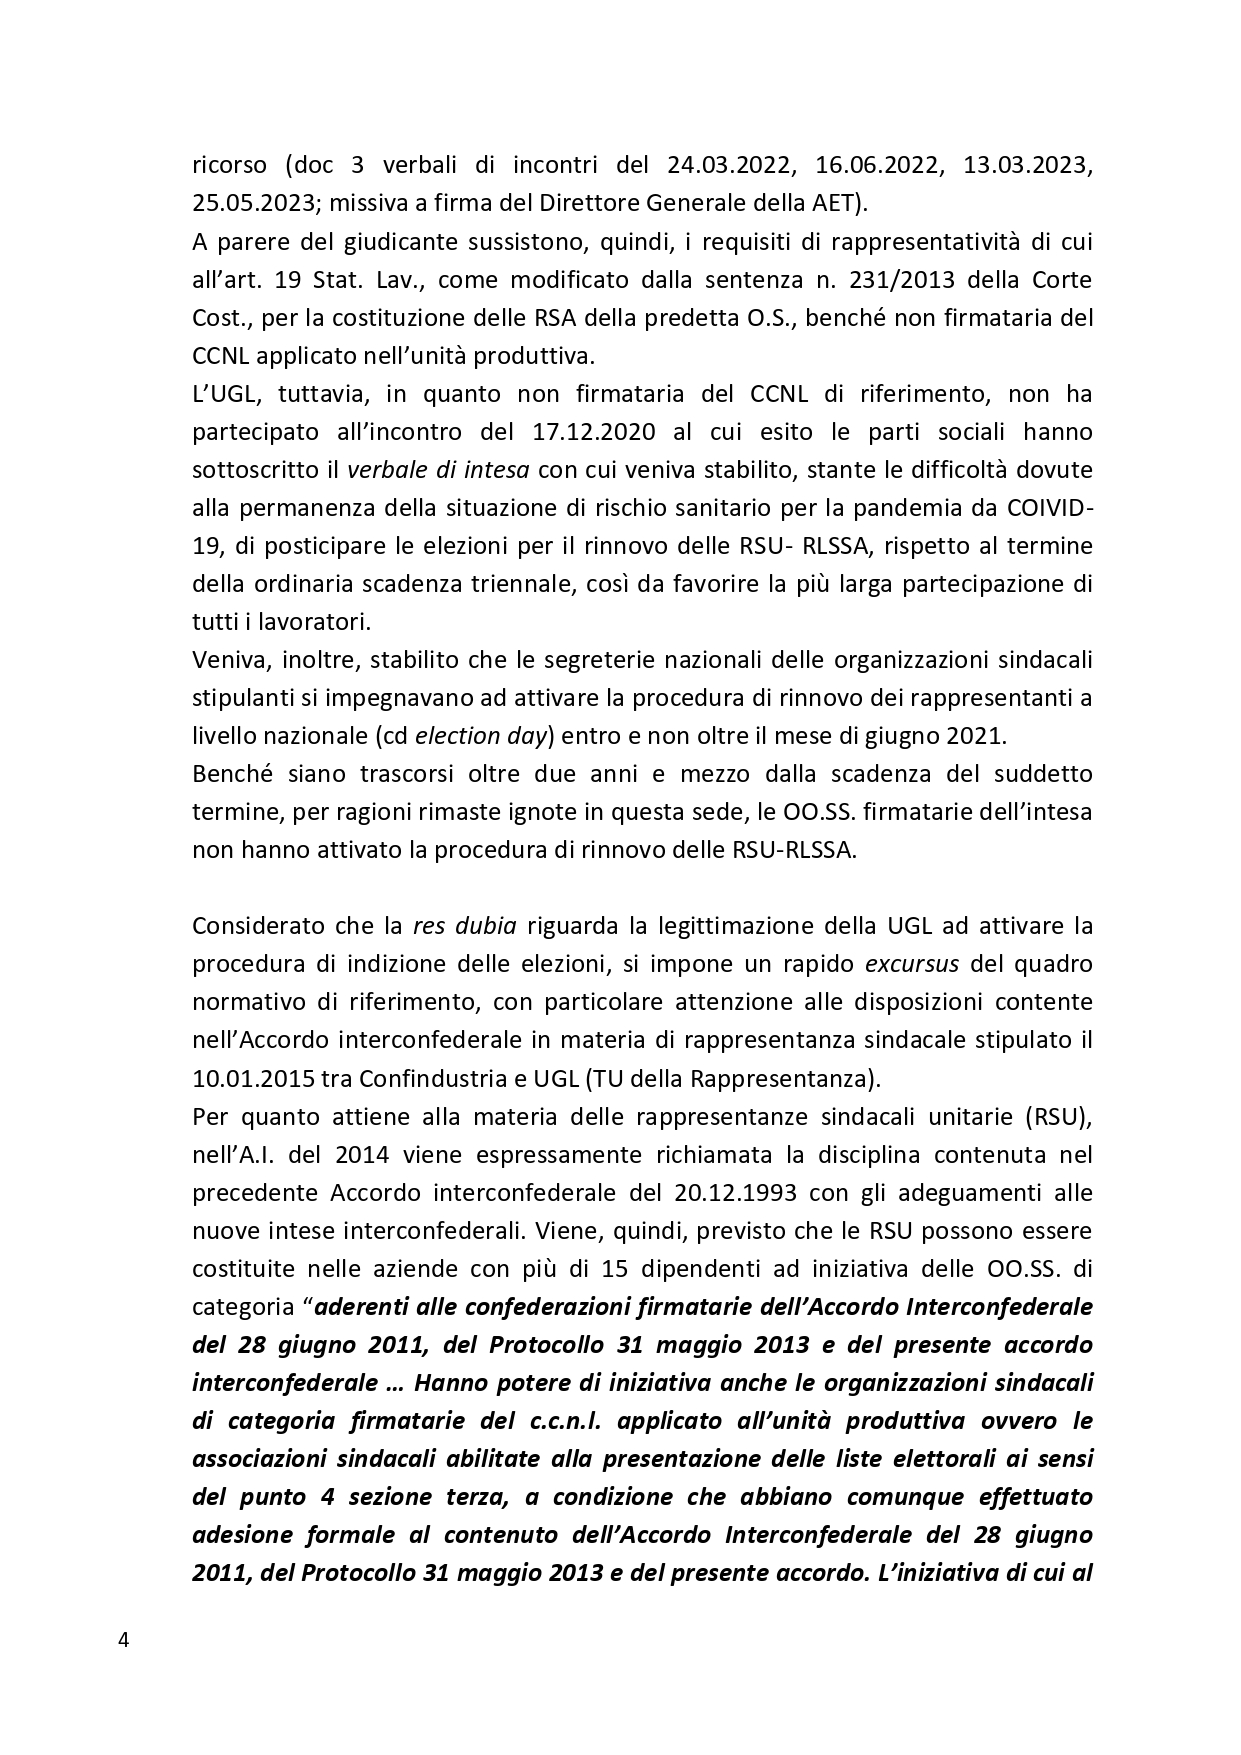 Decreto UGL Ambiente 1 page 0004